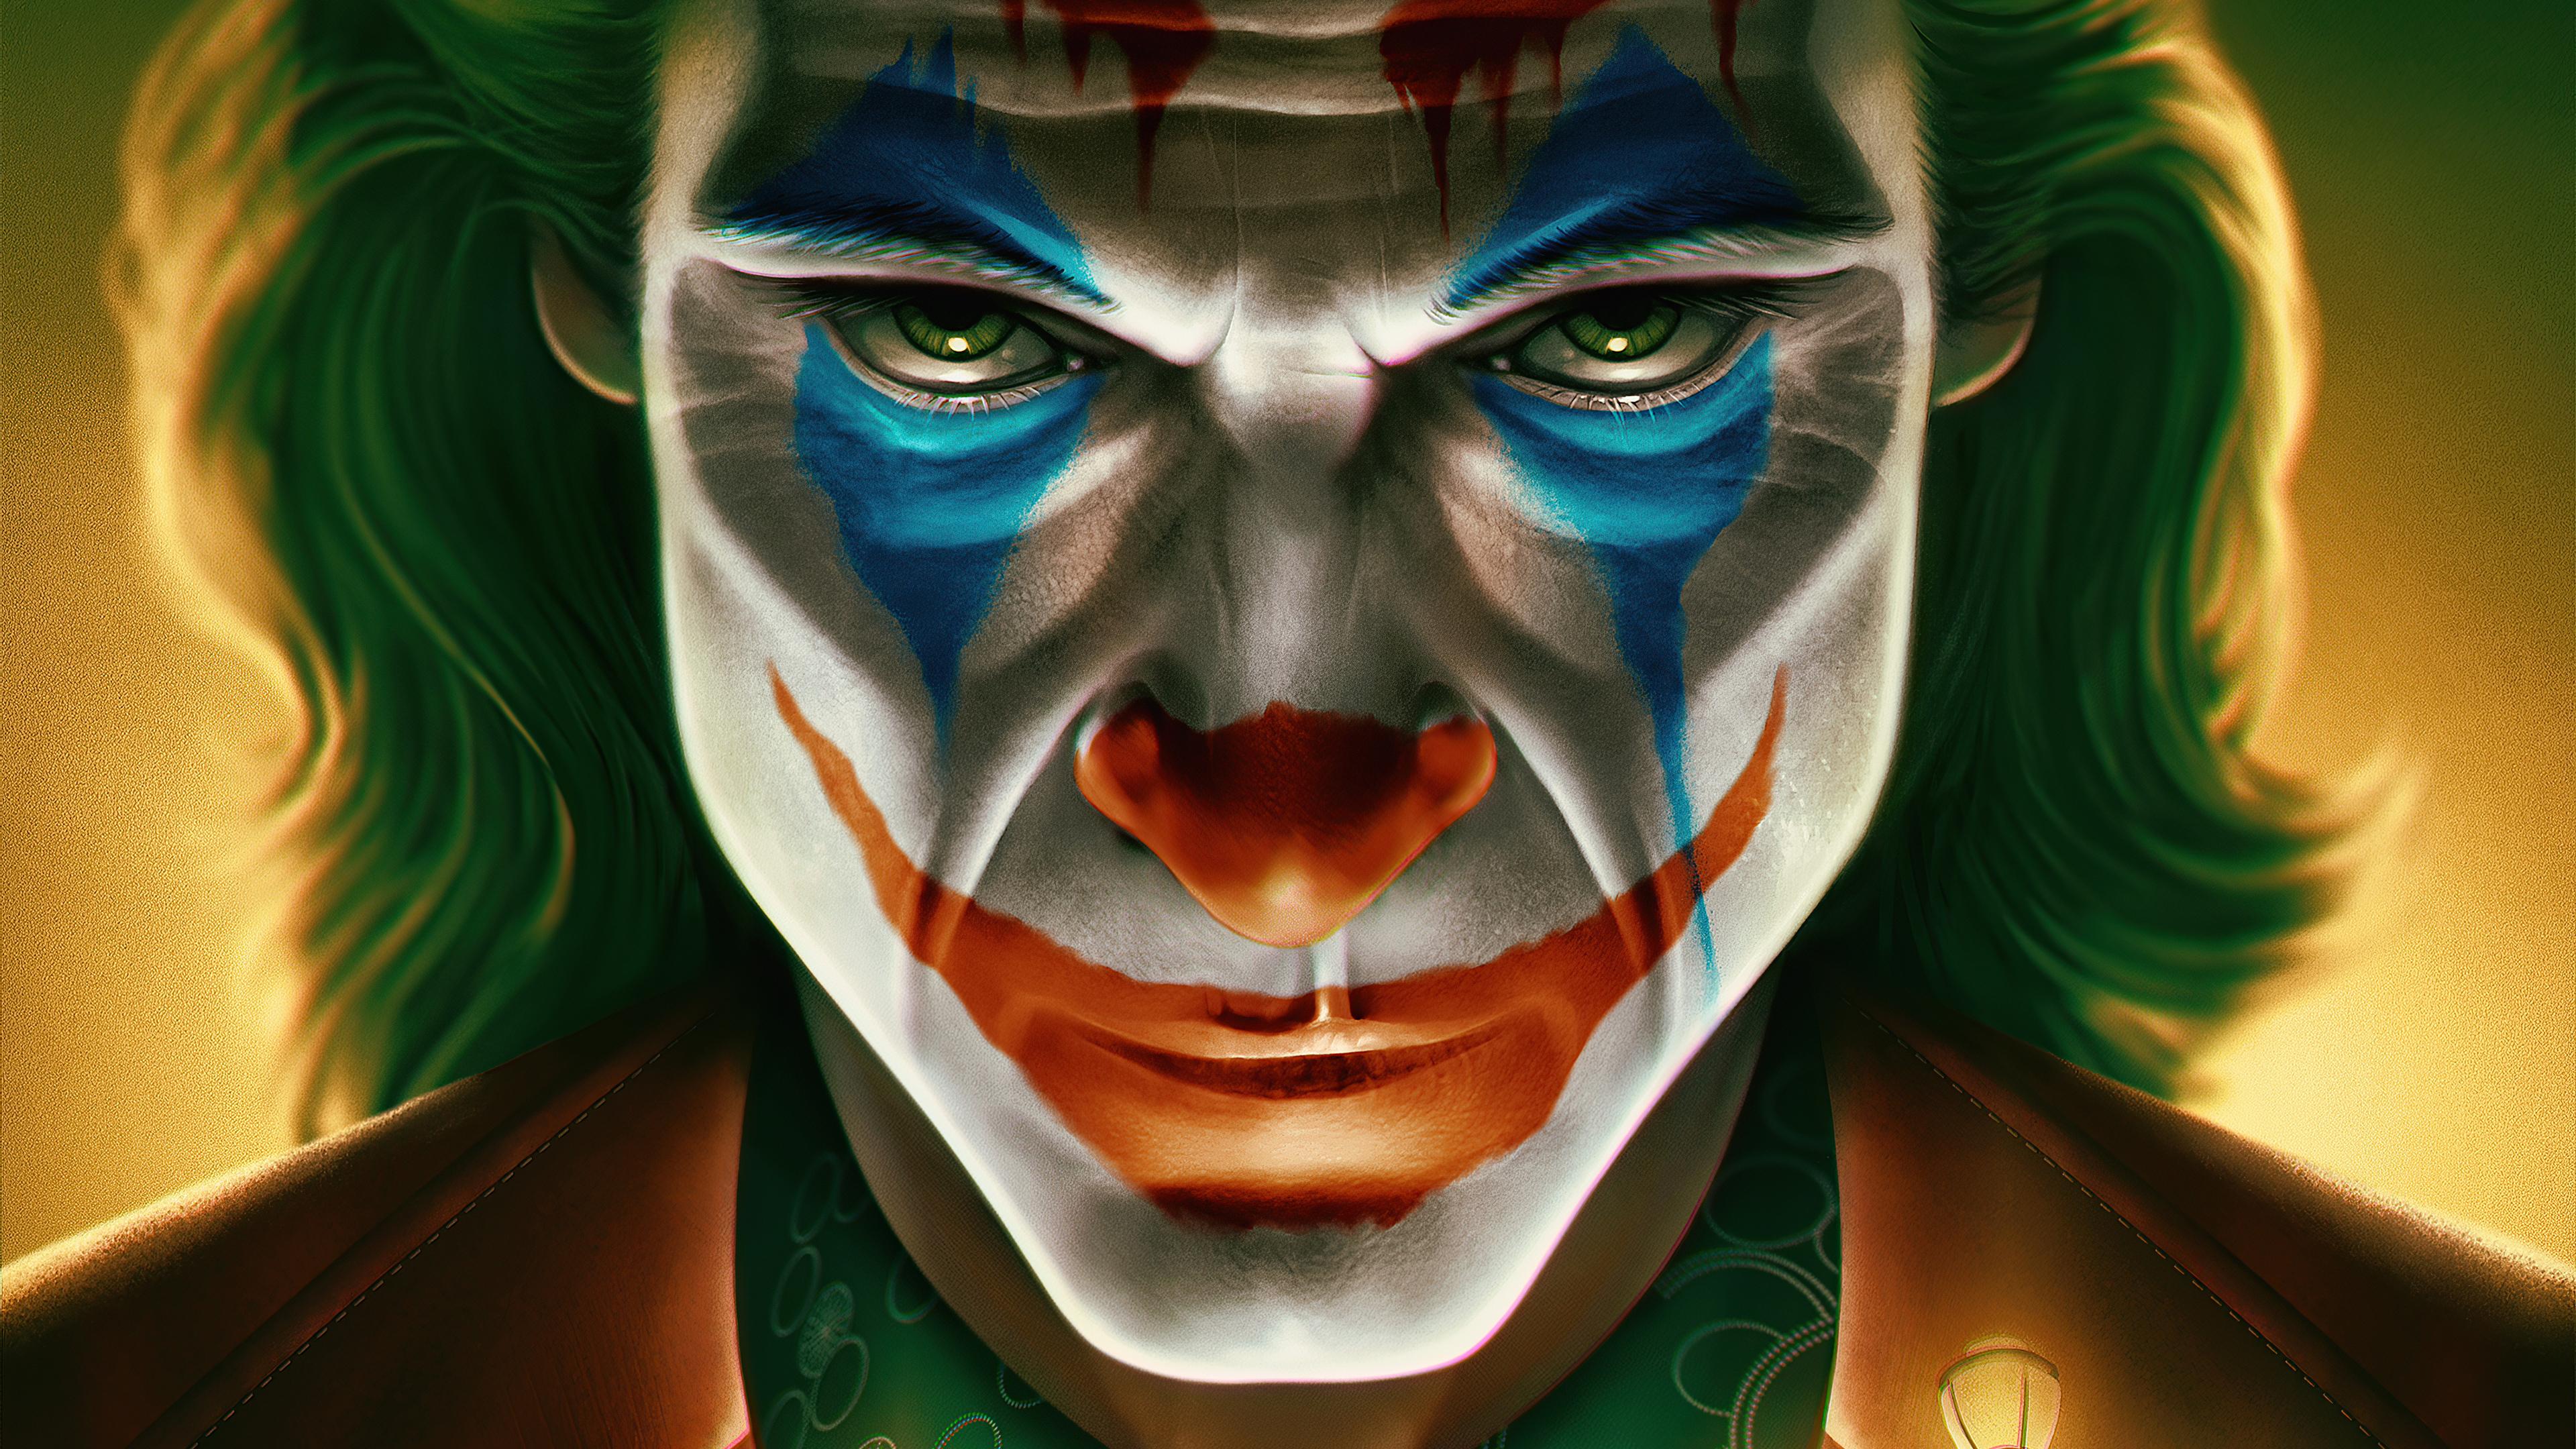 3840 x 2160 · jpeg - 3840x2160 4k Joker Face Closeup 4k HD 4k Wallpapers, Images ...